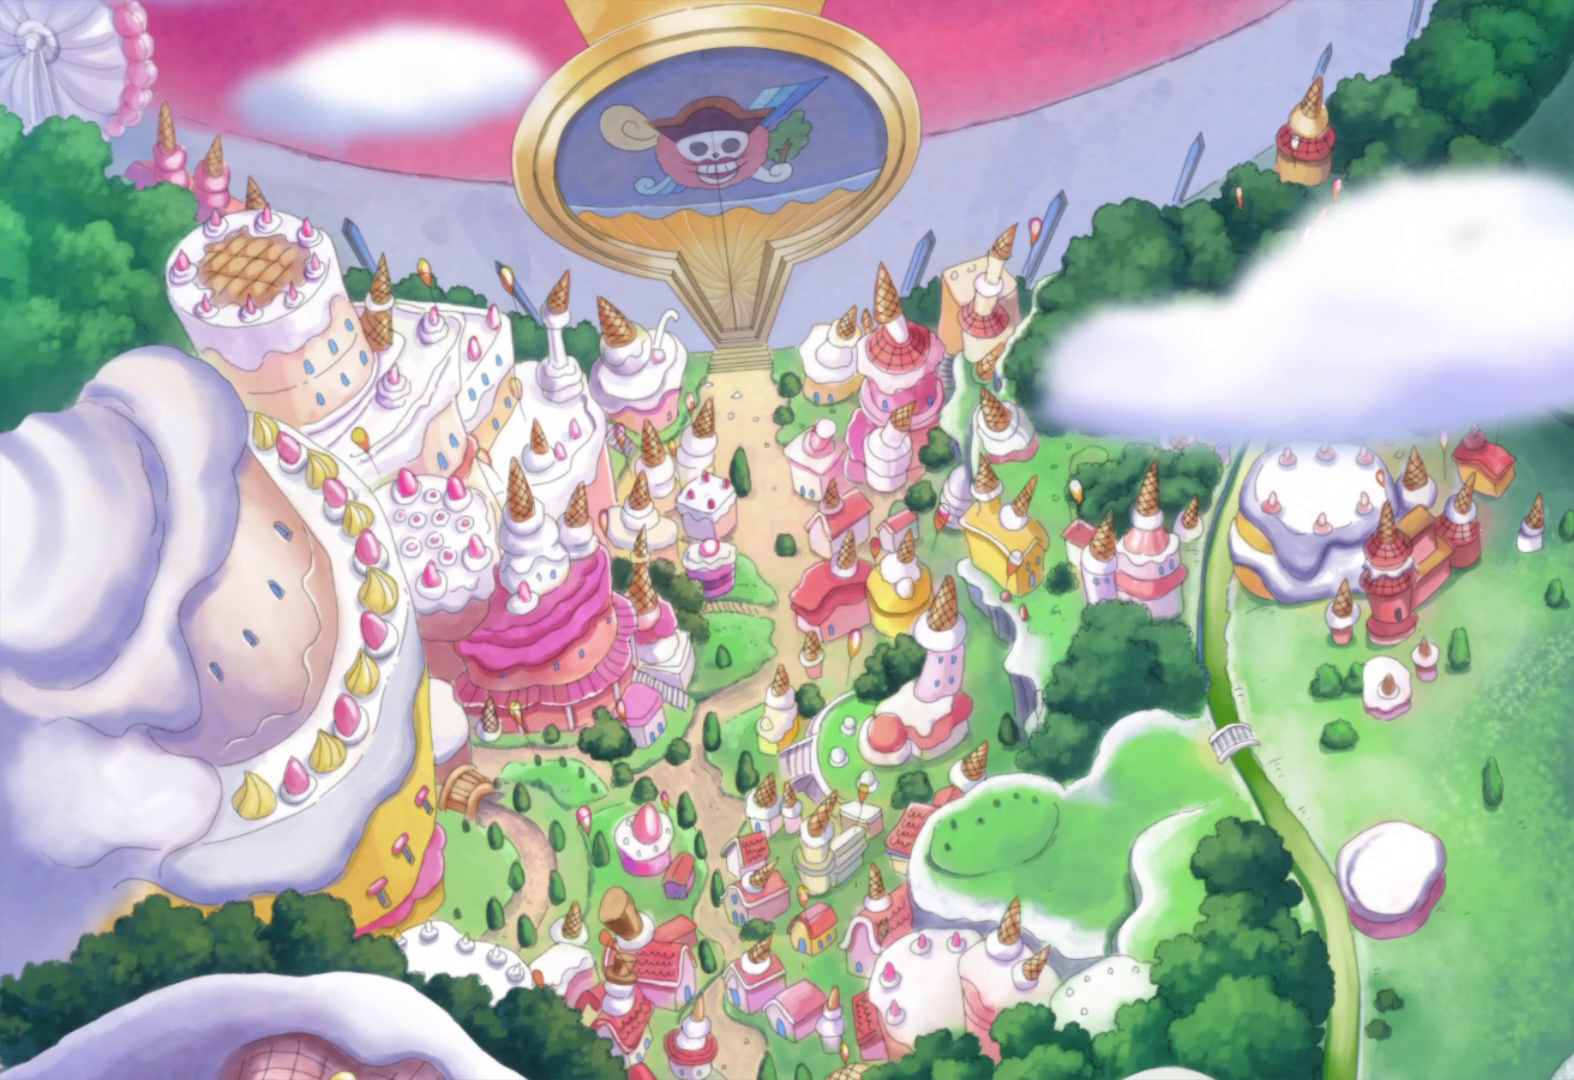 Whole Cake Island | One Piece Wiki | FANDOM powered by Wikia